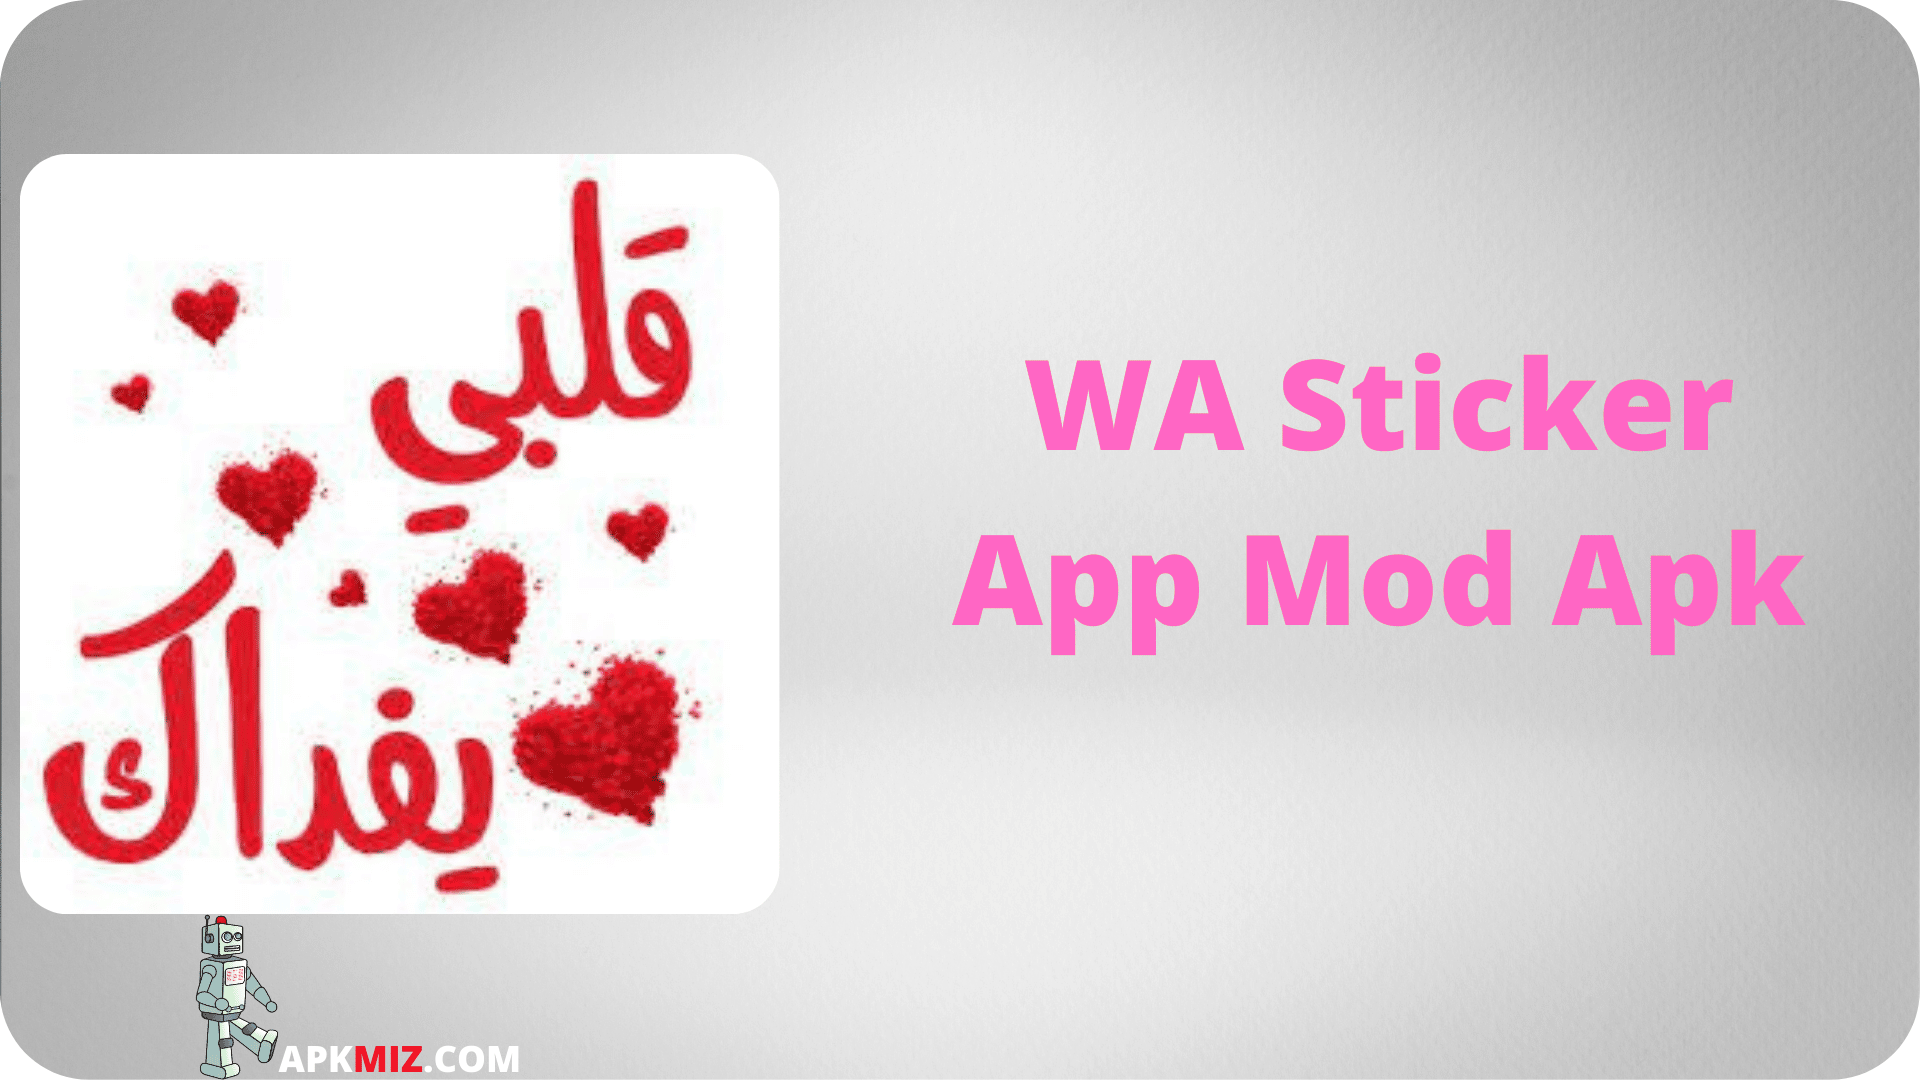 WA Sticker App Mod Apk